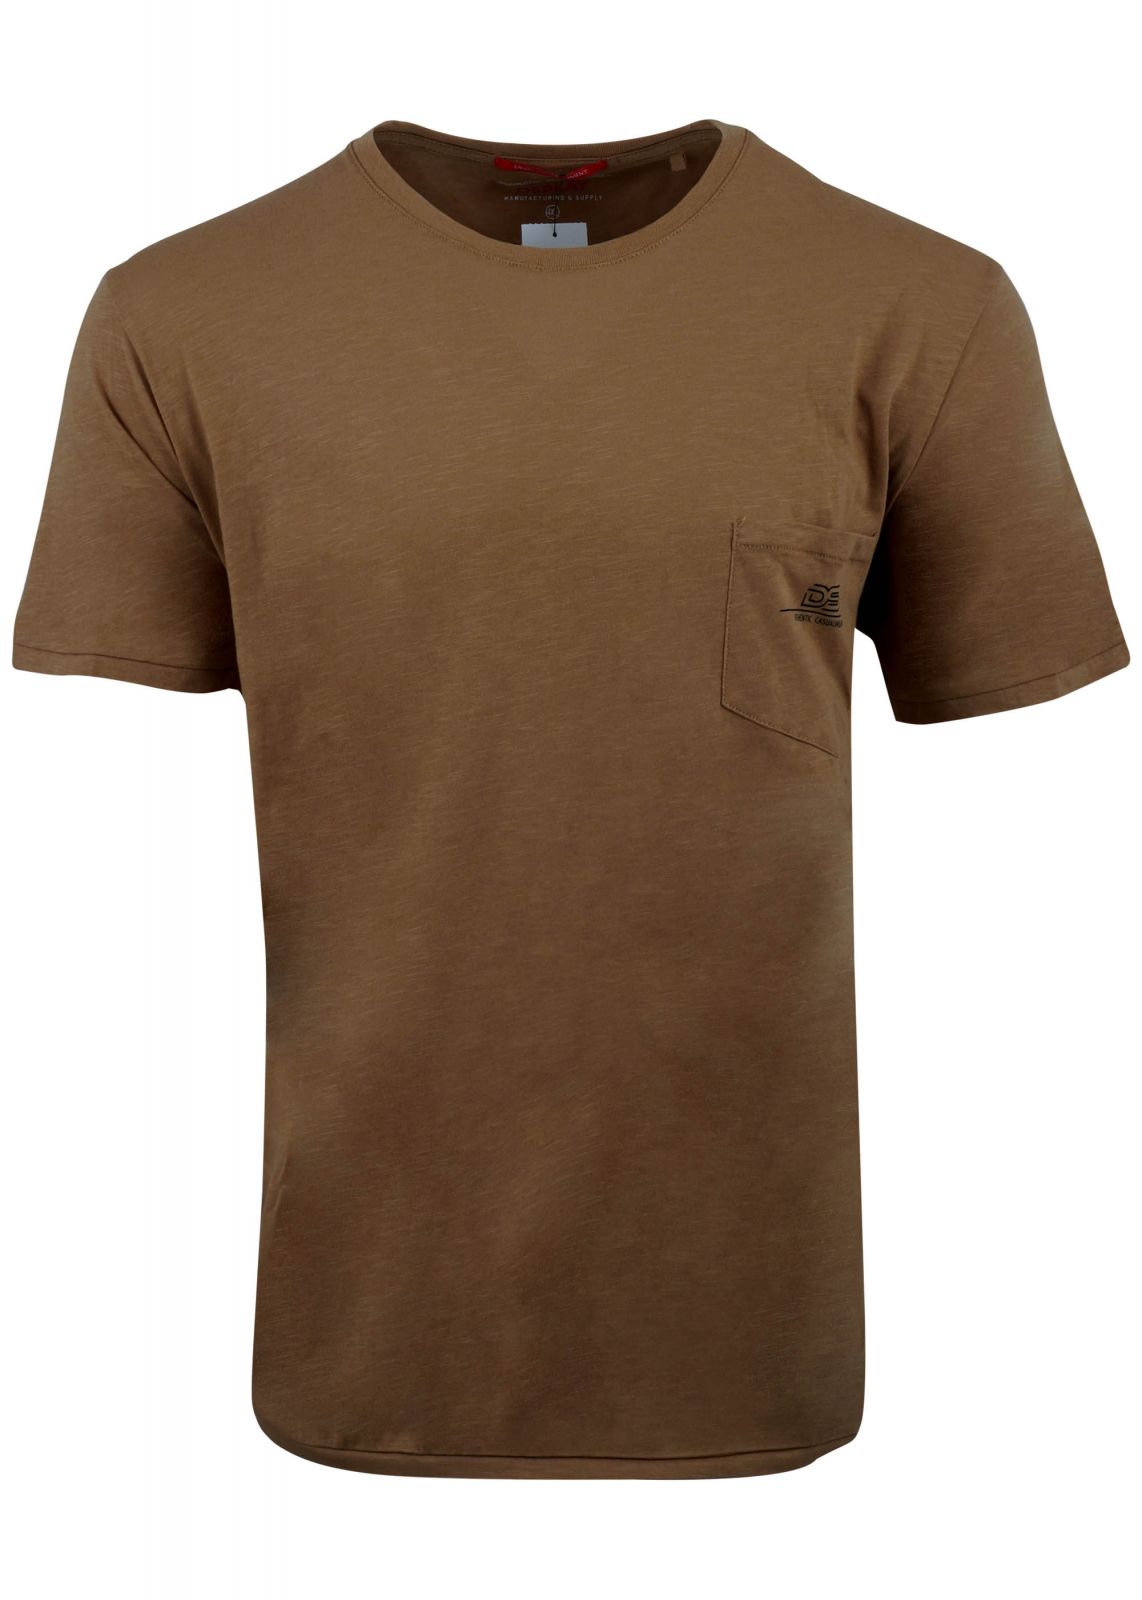 Ανδρικό tshirt dspaly λαιμόκοψη τσεπάκι. Oversize Collection. ΚΑΜΕΛ 3212-19999